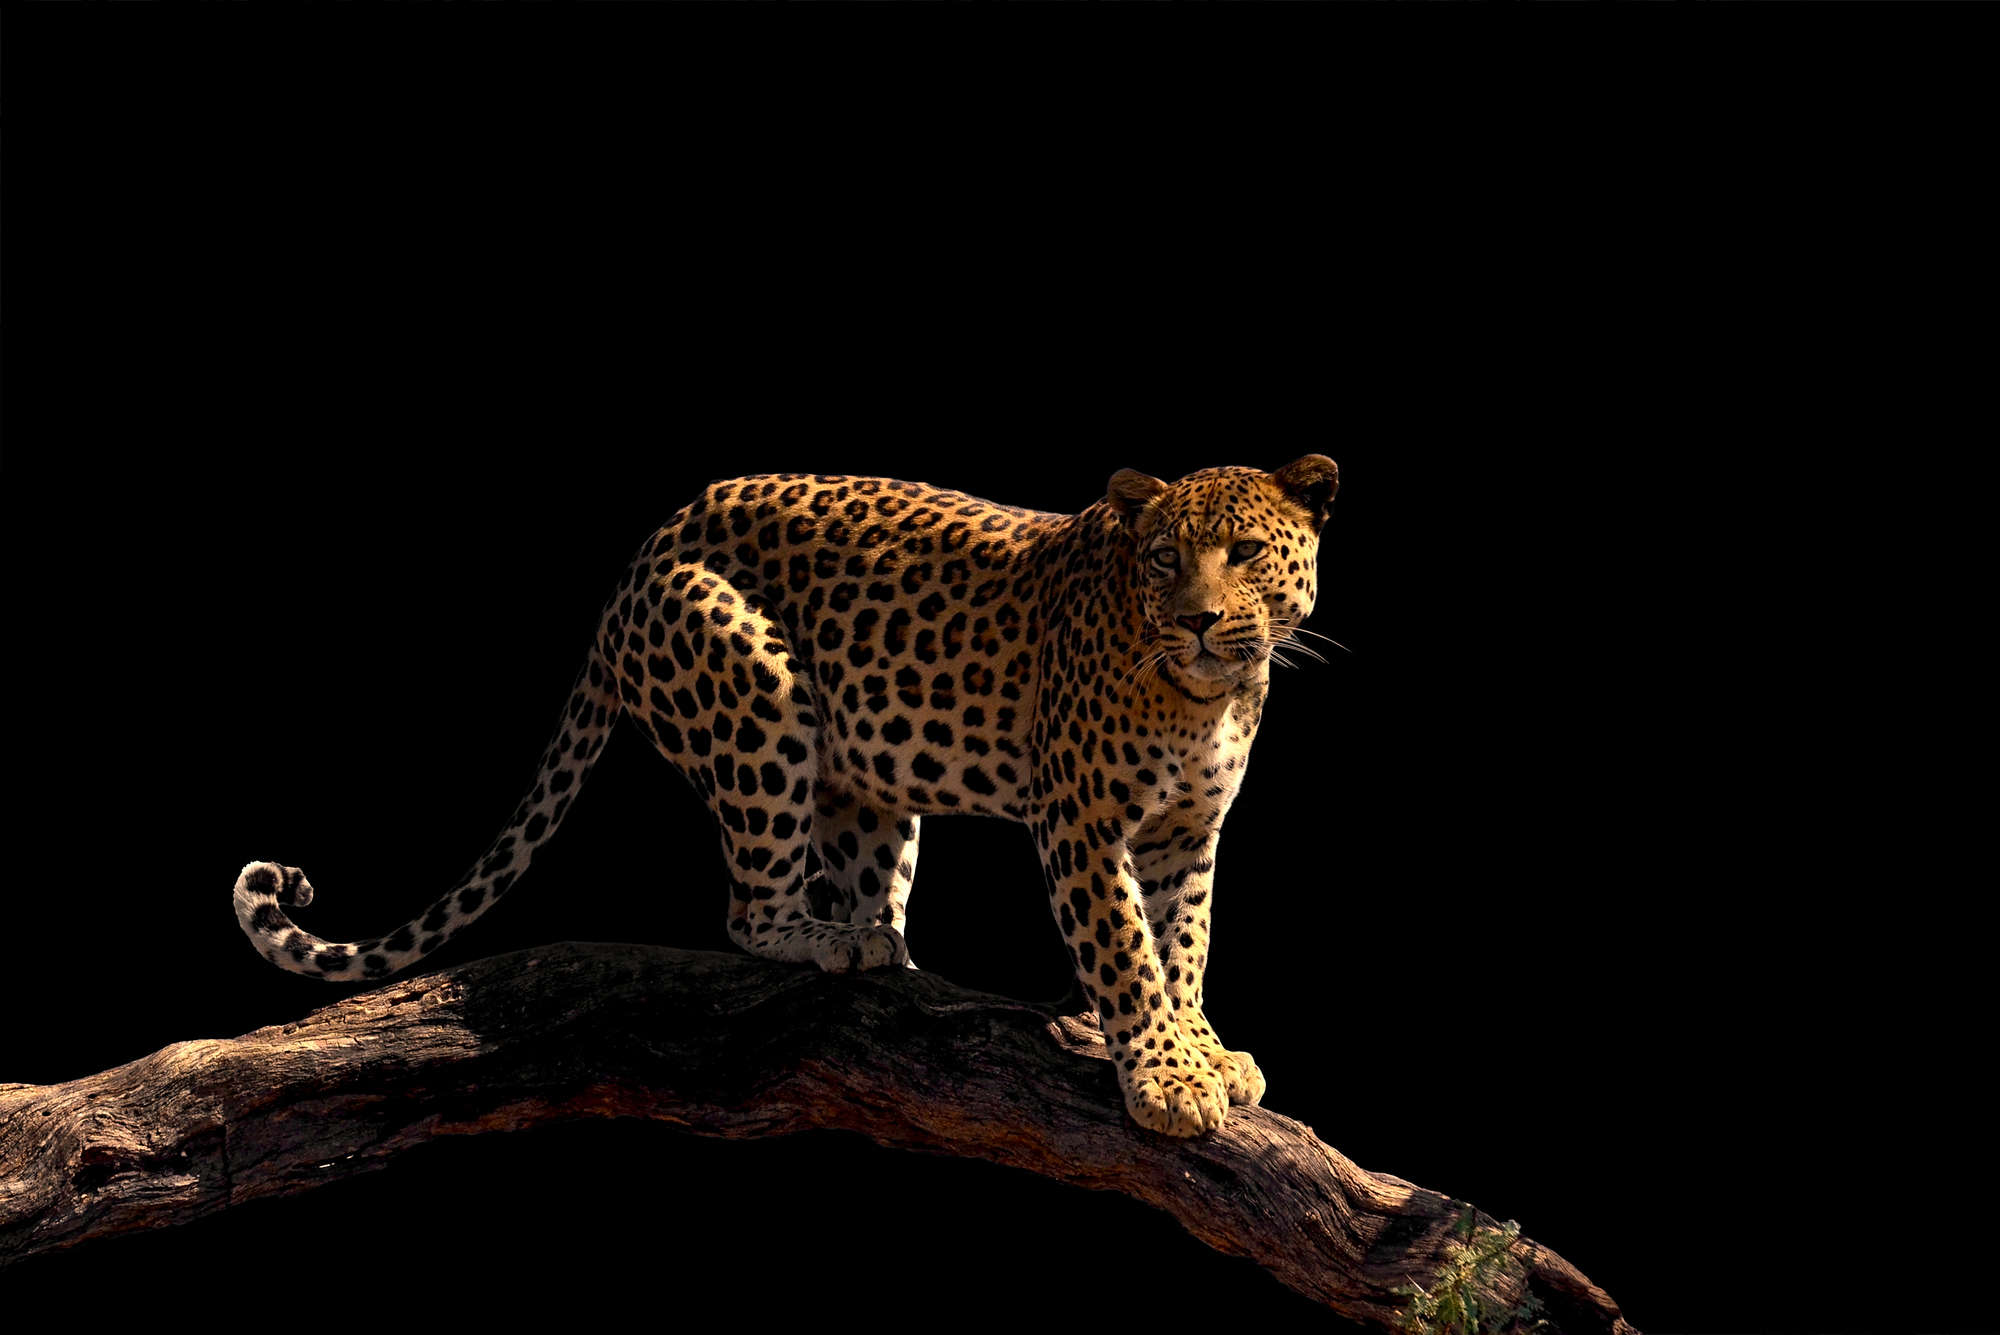             Fotomurali con leopardo in piedi su un ramo su vello liscio opaco
        